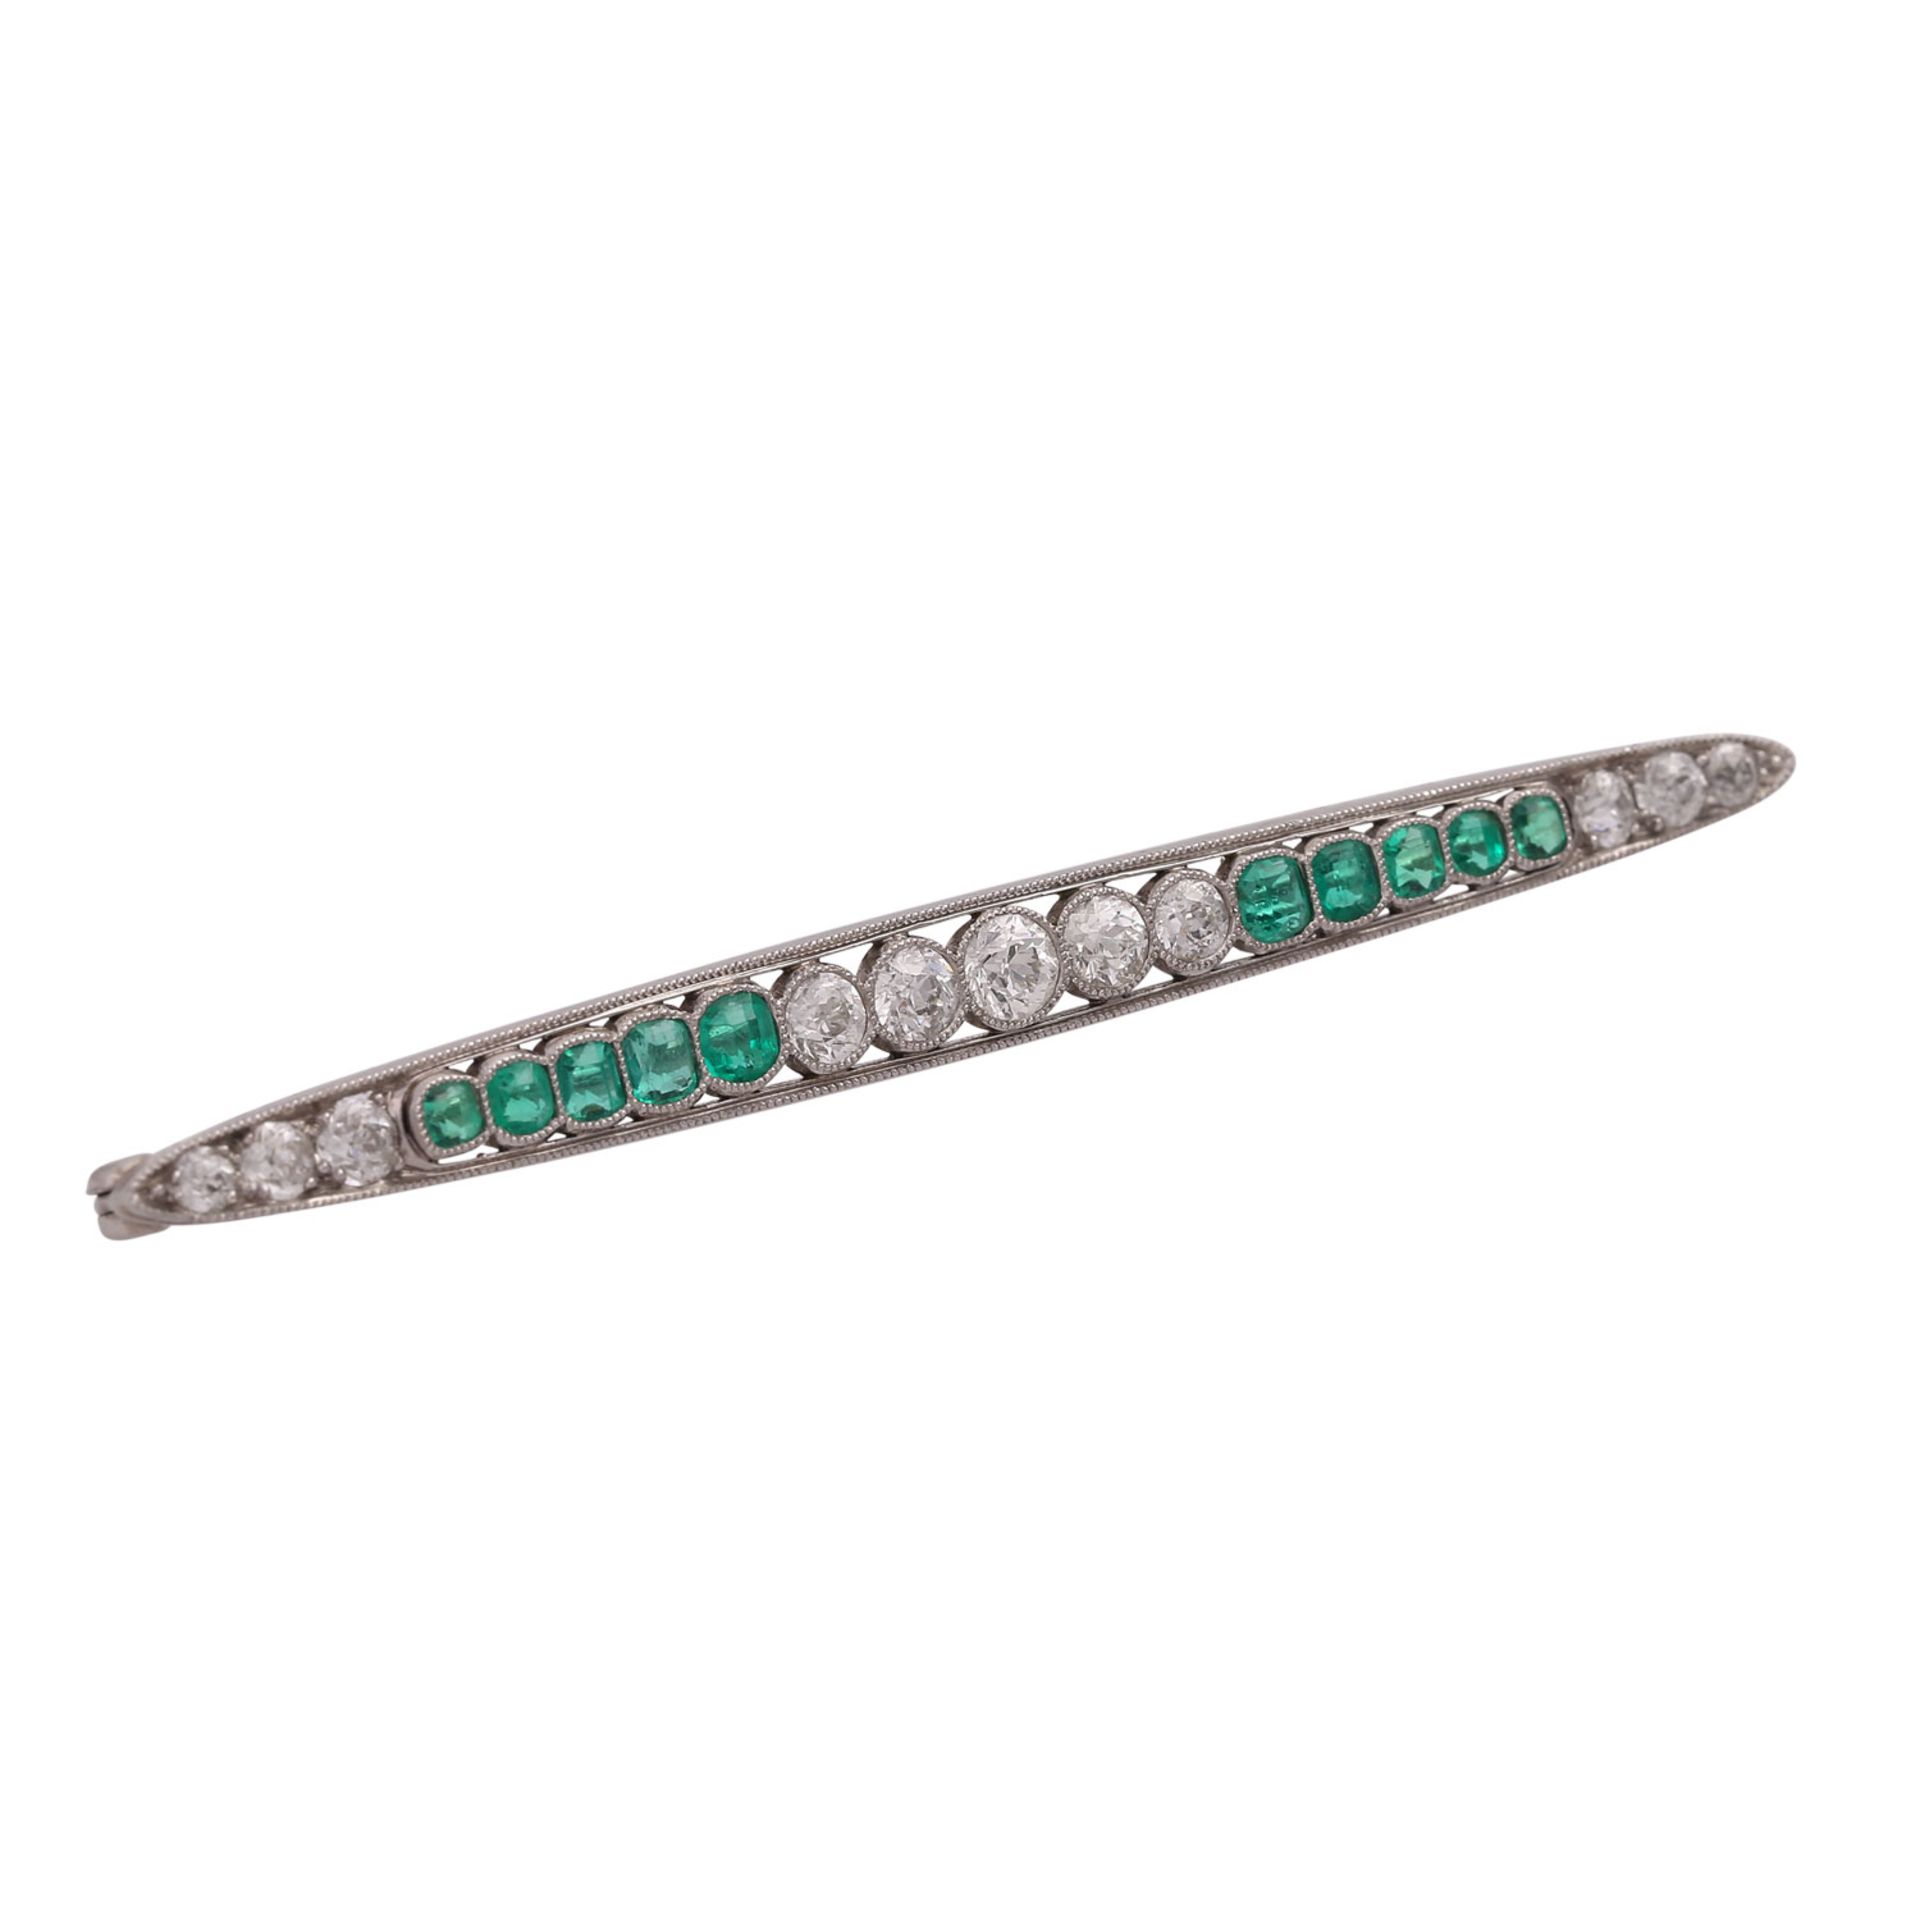 Art Déco Nadel mit 11 Altschliffdiamanten, zus. ca. 1,5 ctund 10 Smaragden von schöner Farbe in - Bild 2 aus 4